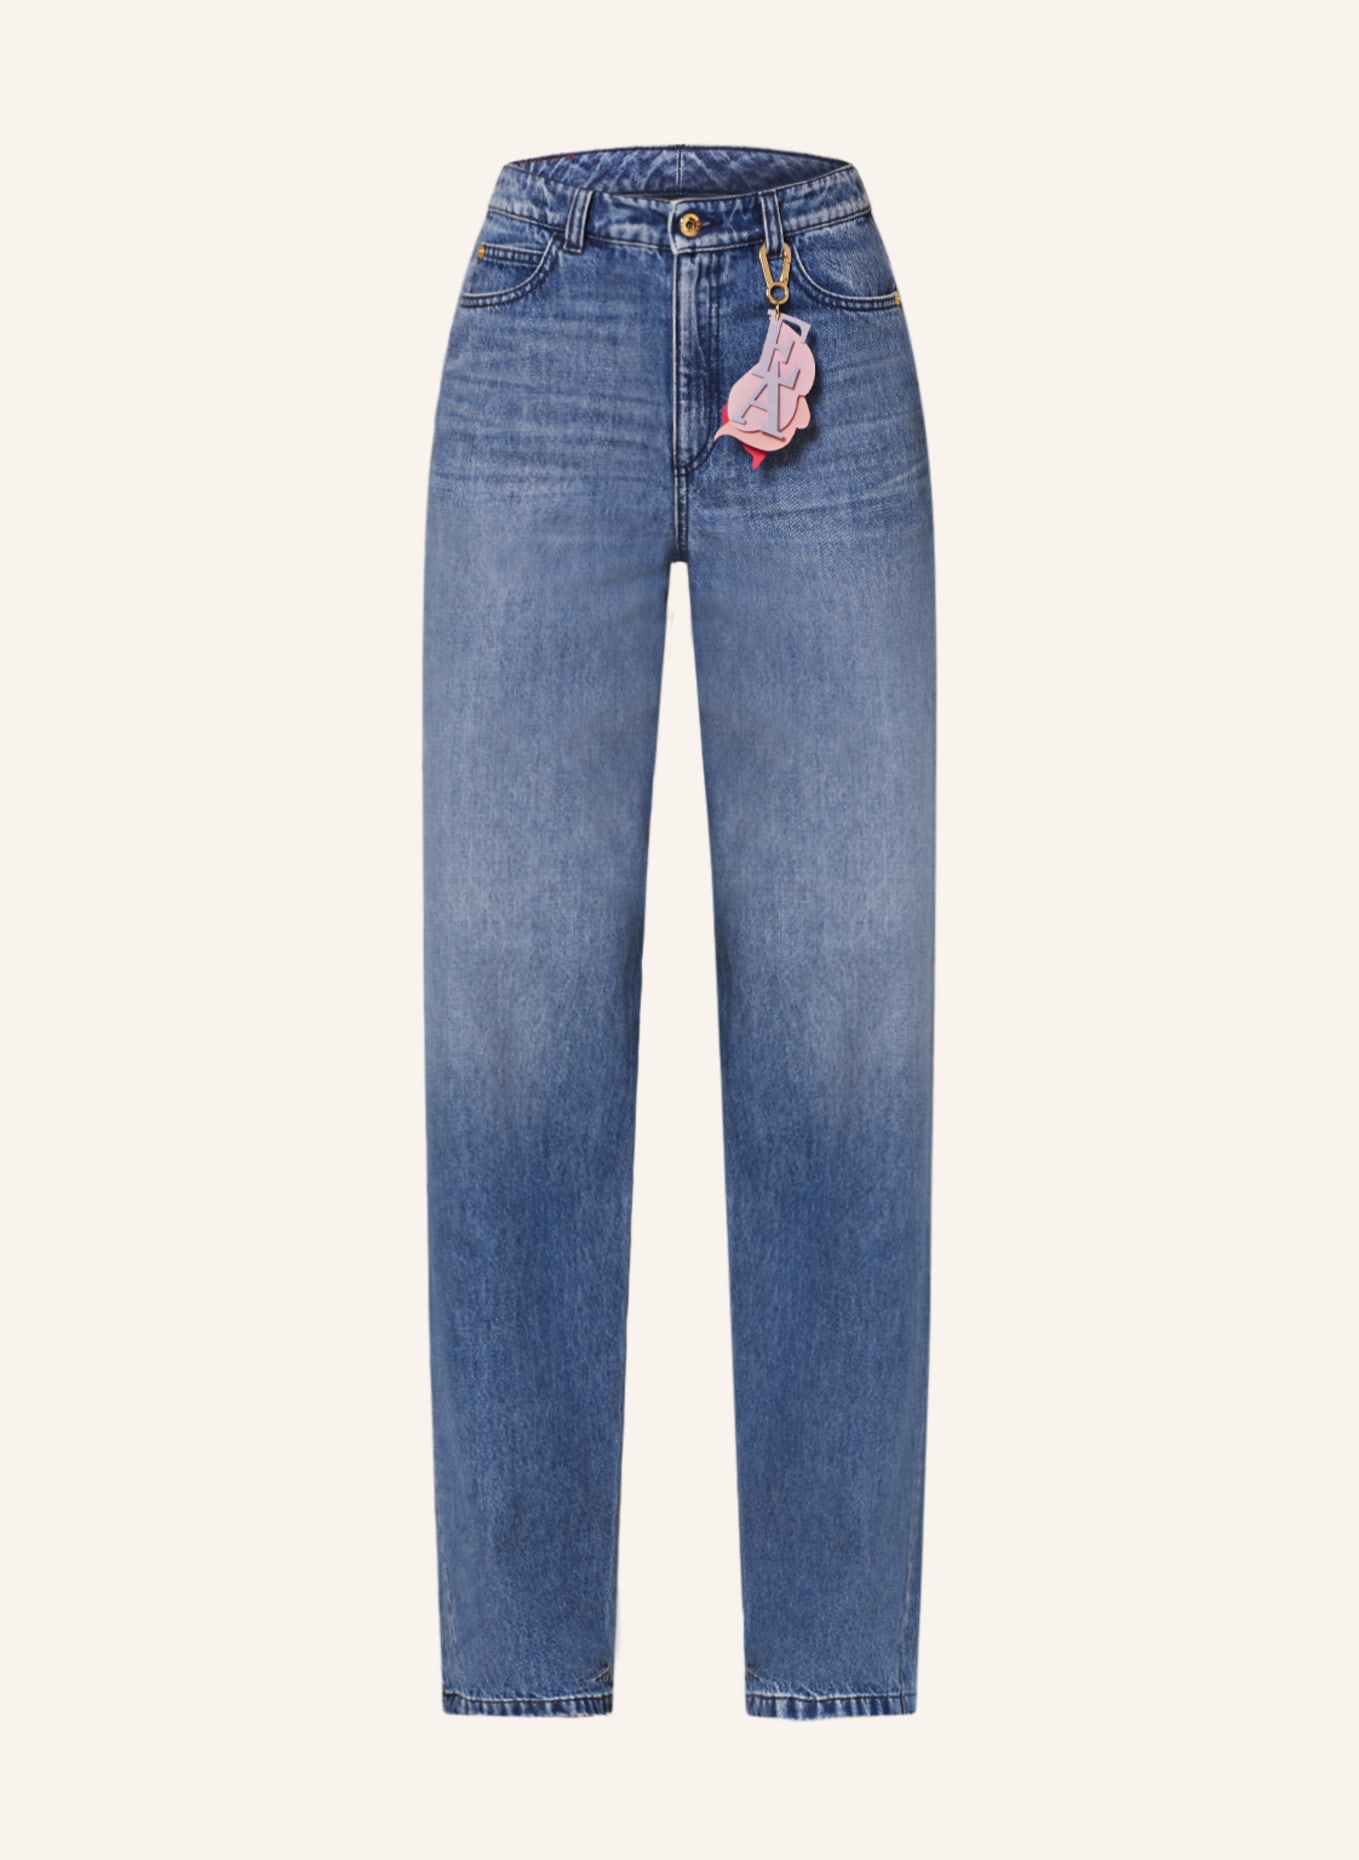 EMPORIO ARMANI Straight Jeans, Farbe: 0941 Denim (Bild 1)